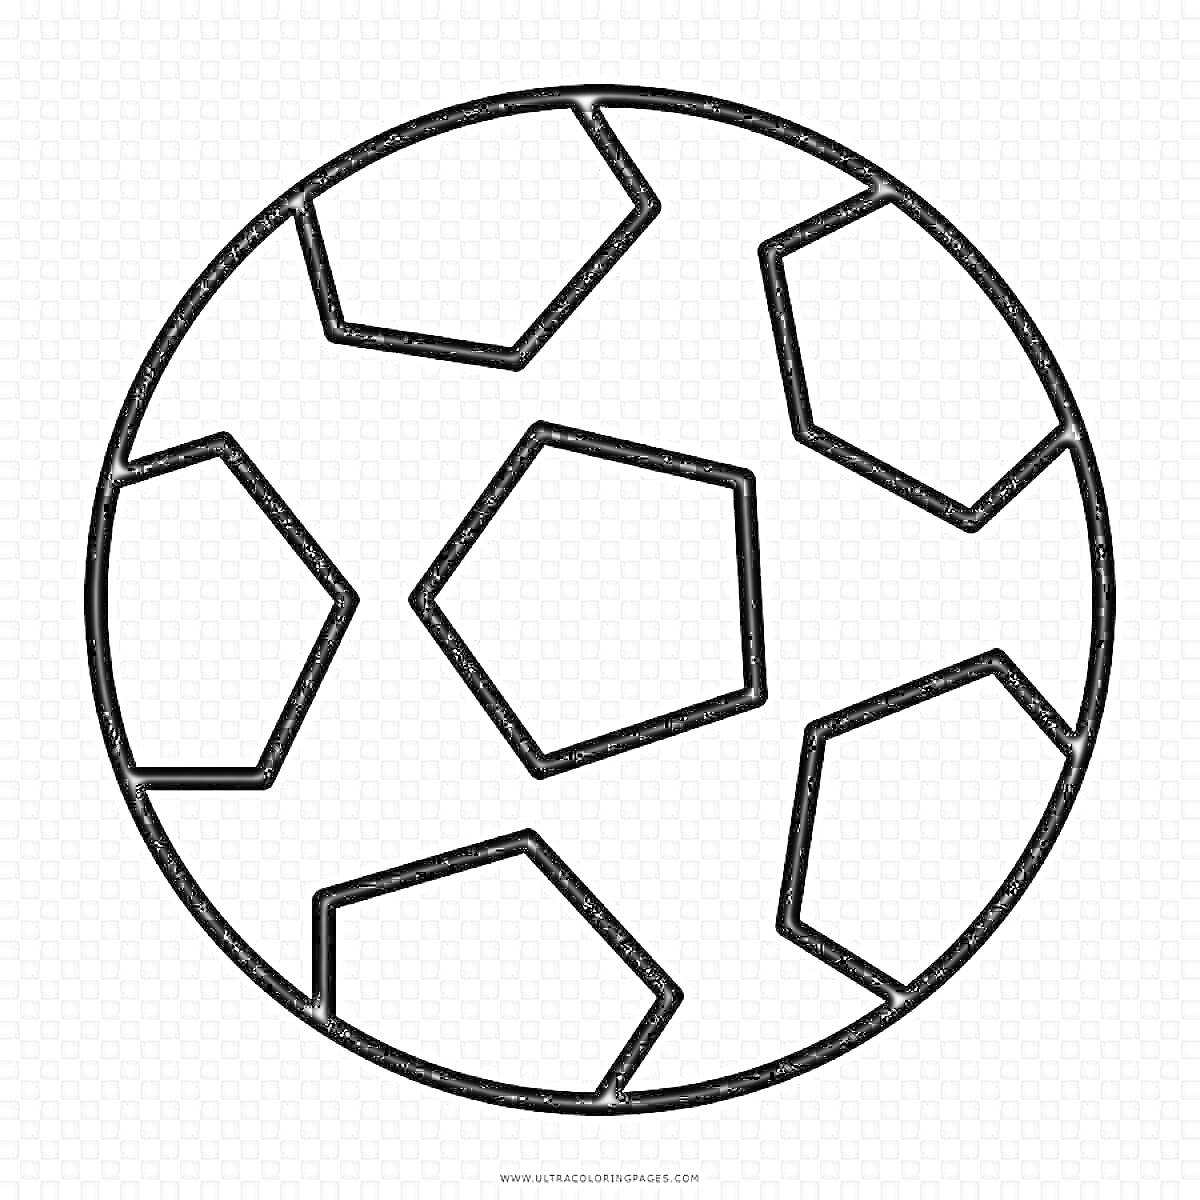 Футбольный мяч с черными контурами и пятиугольными и шестиугольными панелями